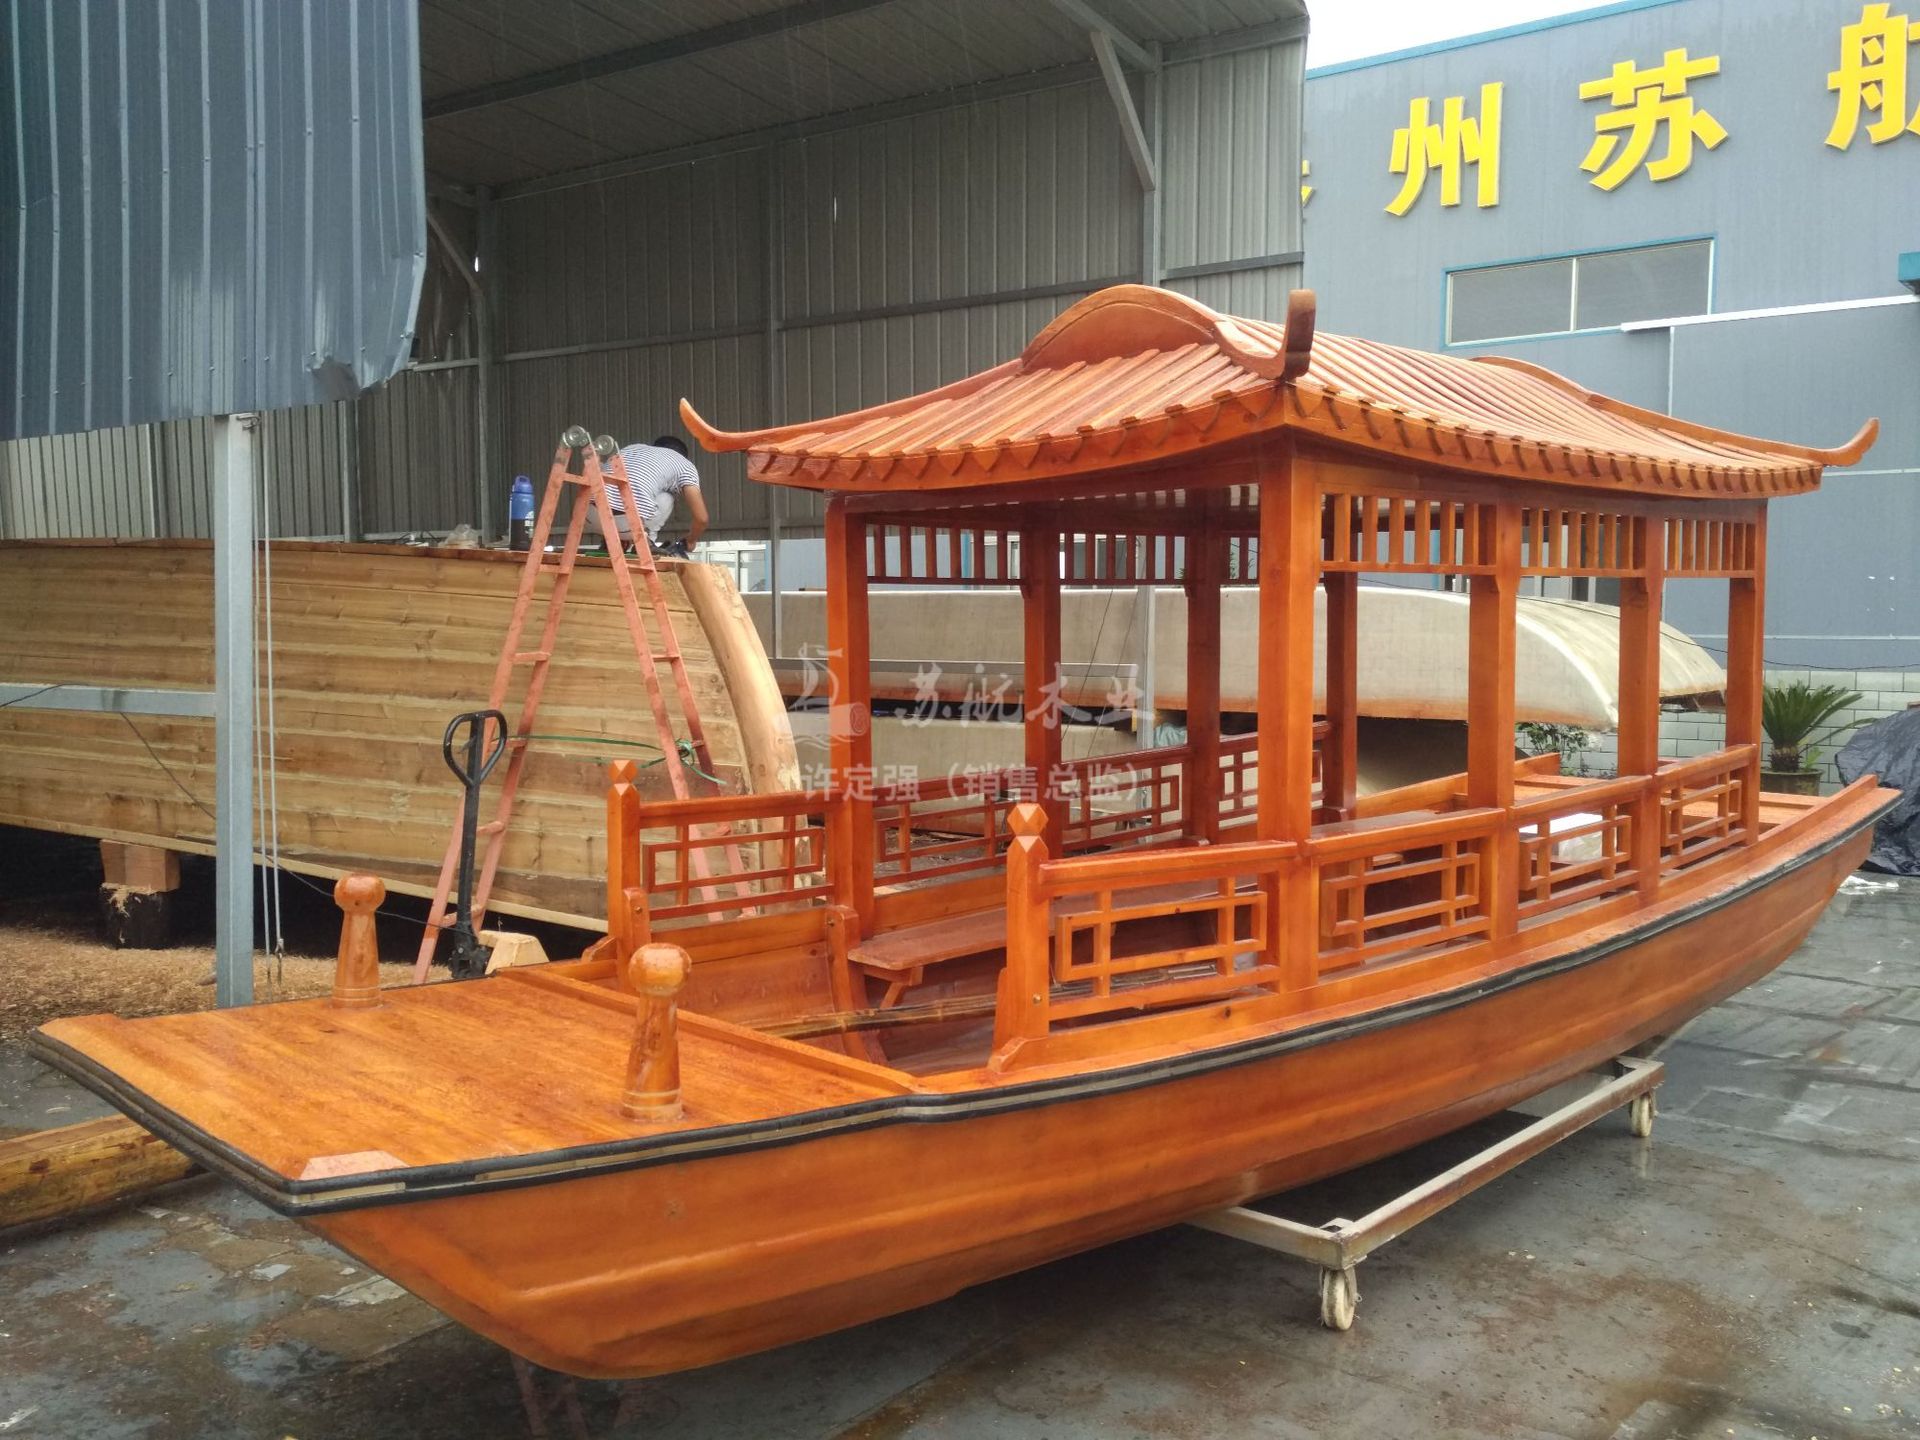 木船出售 定制6人仿古手划船休闲旅游乌篷游船 电动观光船示例图8